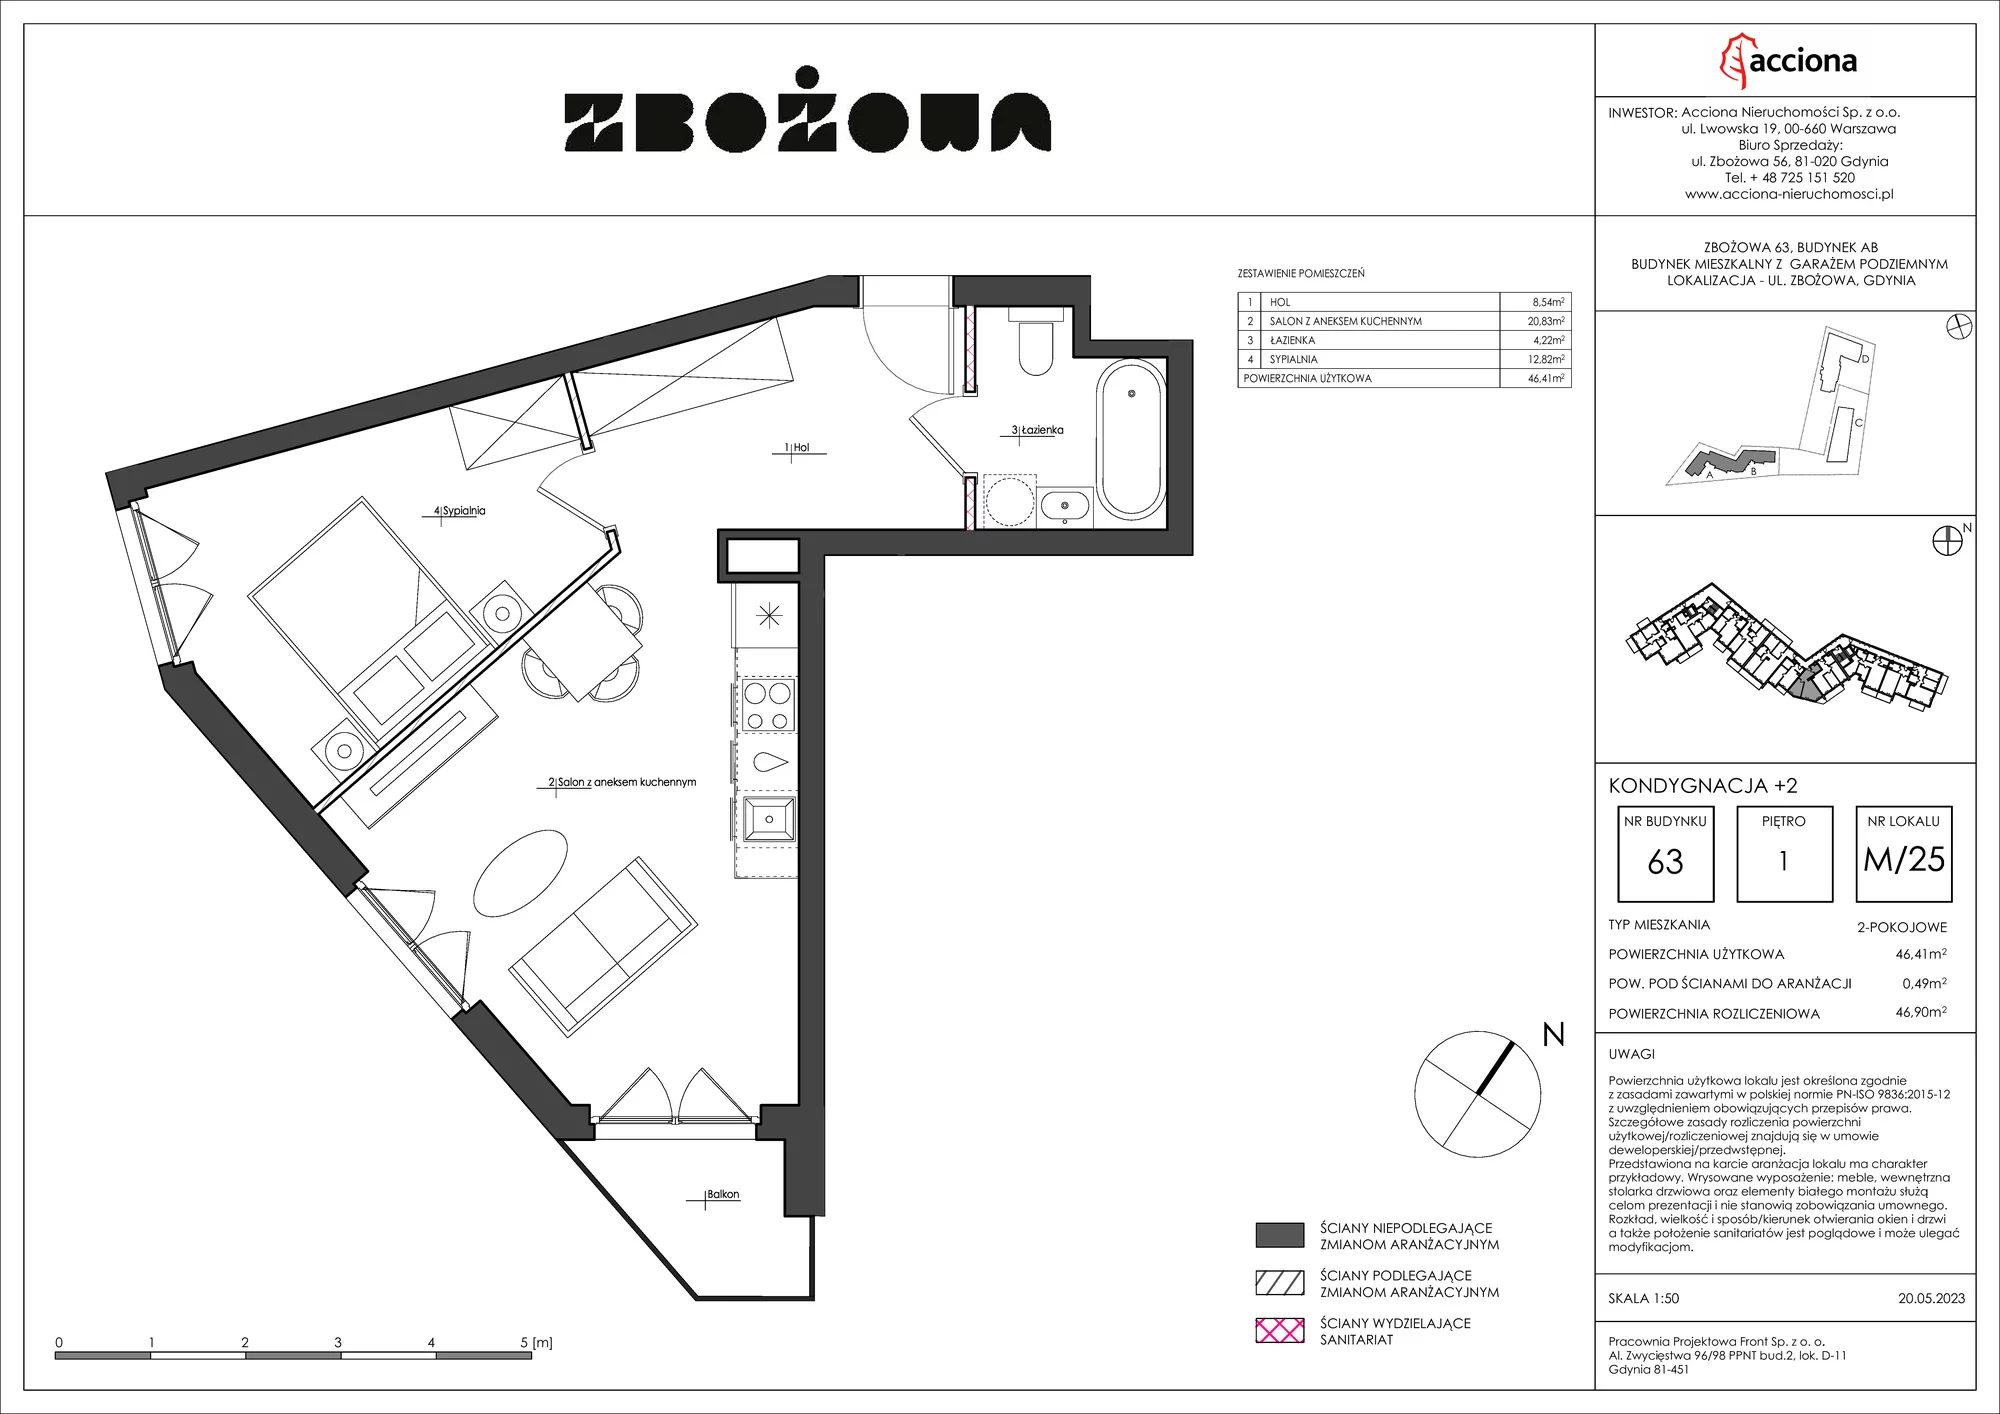 Mieszkanie 46,90 m², piętro 1, oferta nr 63.25, Zbożowa, Gdynia, Cisowa, ul. Zbożowa